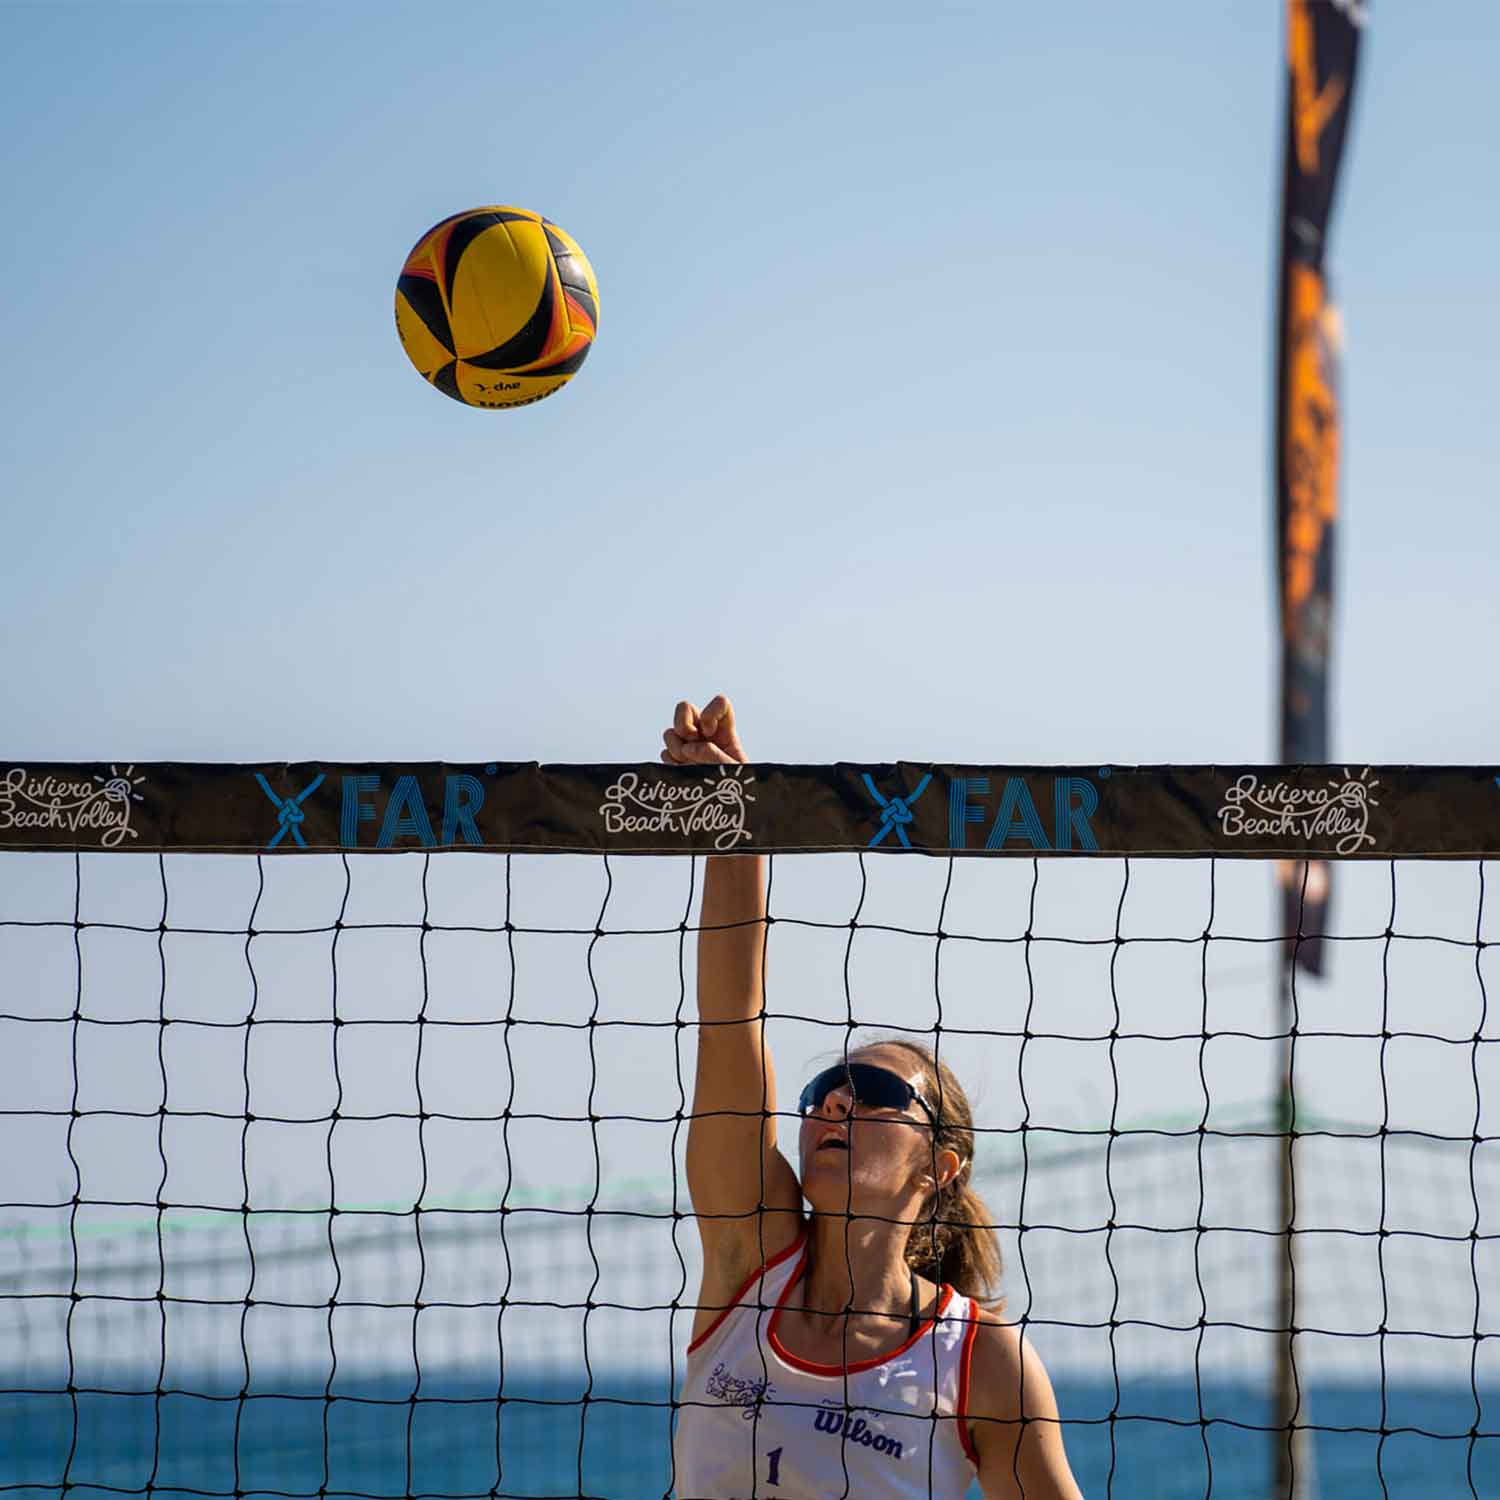 Reti Beach volley, beach tennis e beach soccer